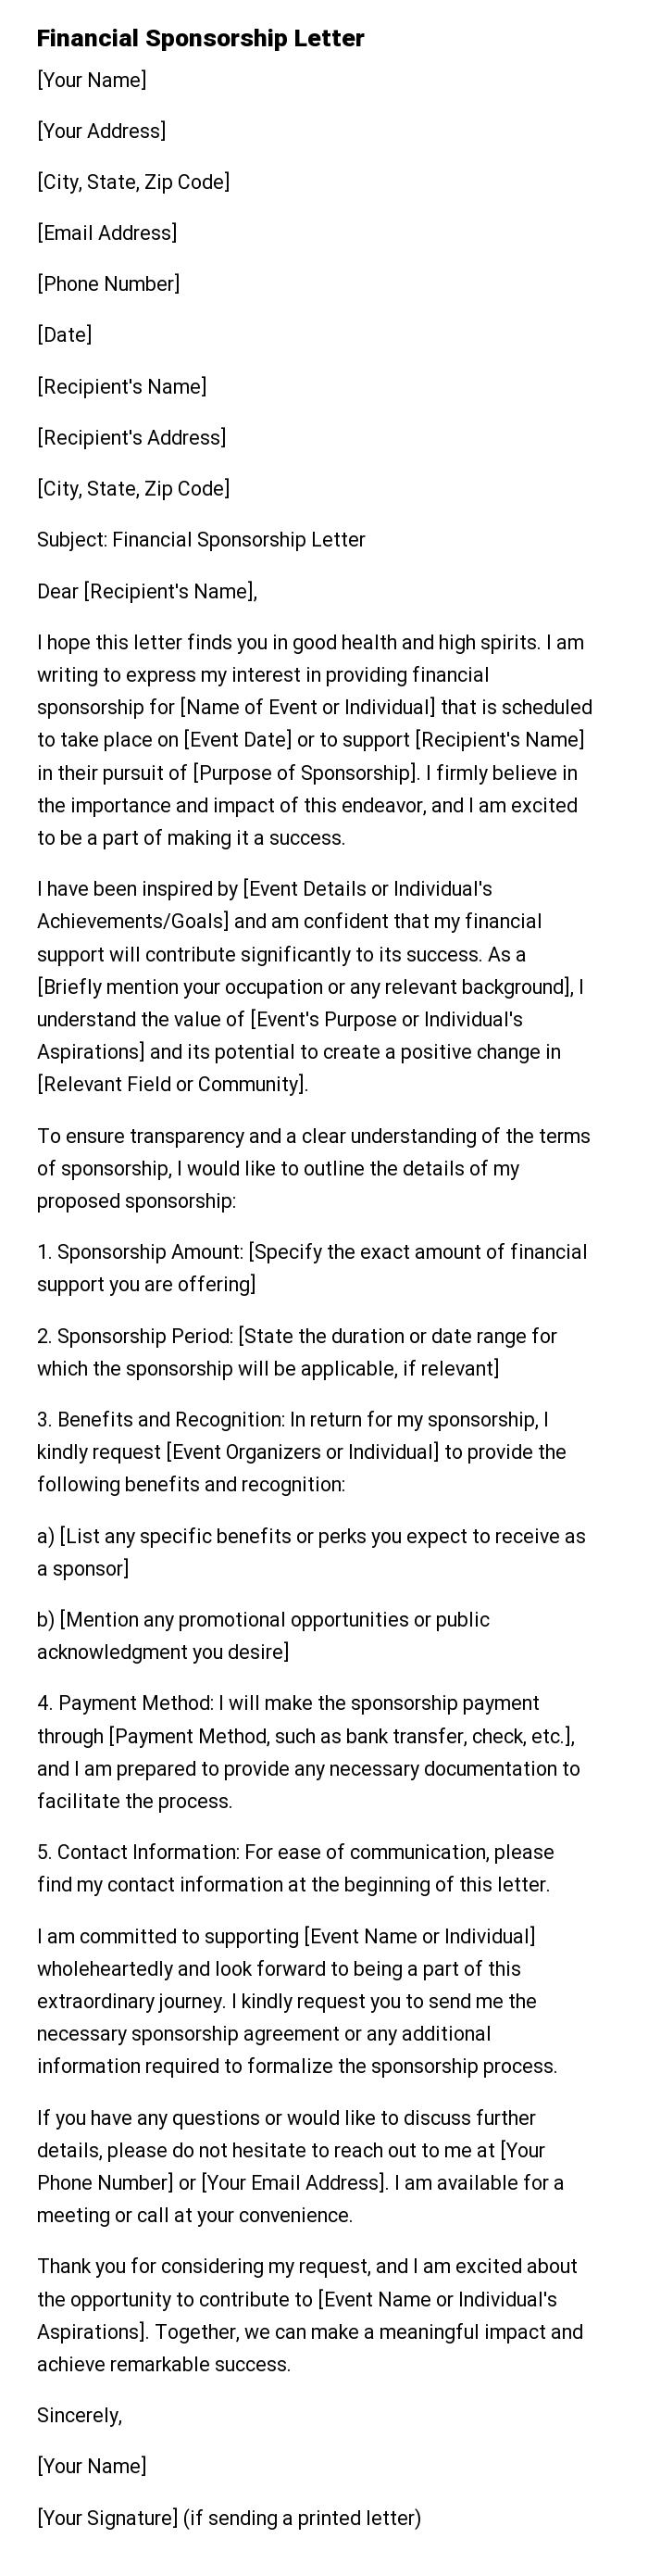 Financial Sponsorship Letter